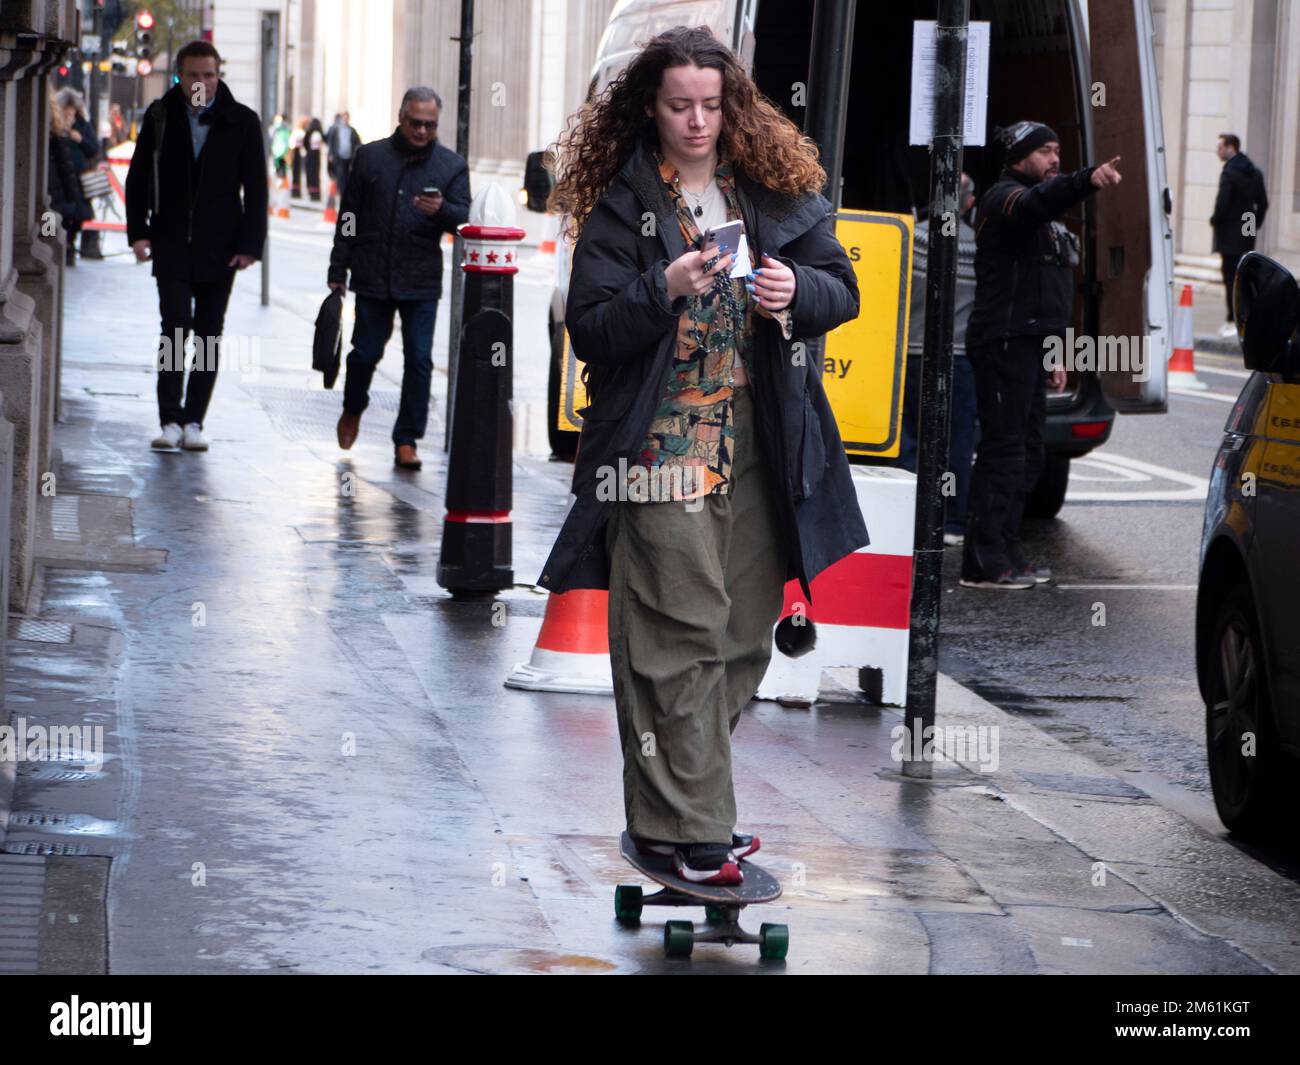 Femme skateboarder, patinage dans la rue Threadneedle regardant le téléphone Banque D'Images